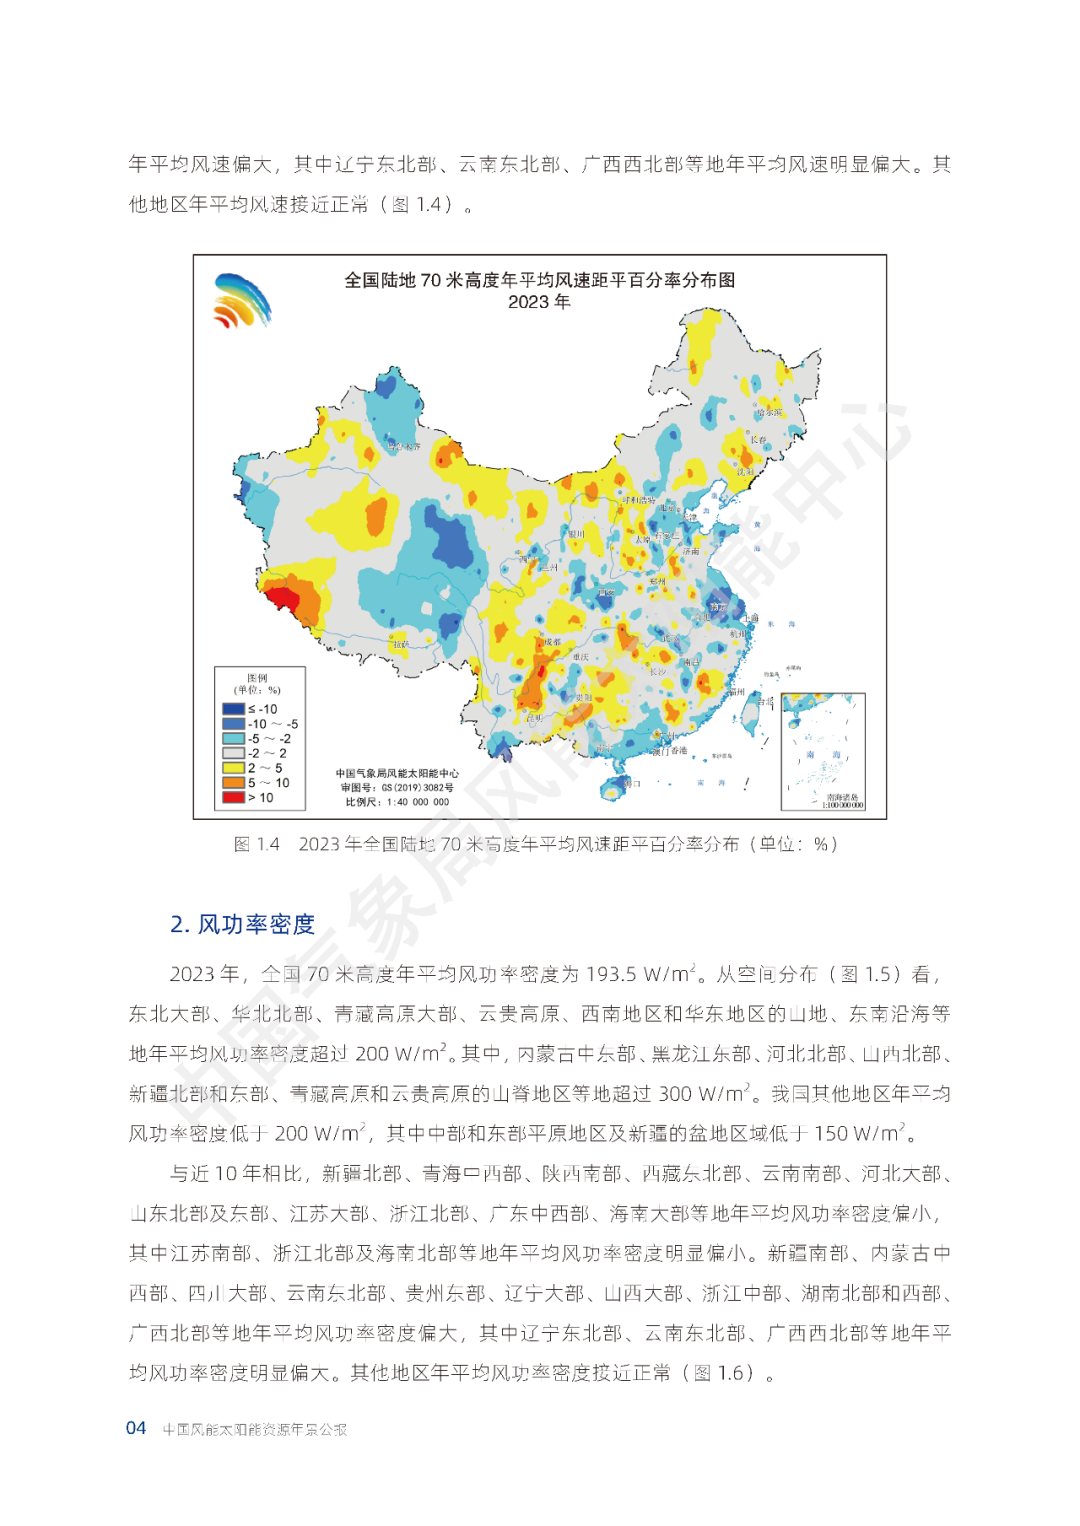 2023年中国风能太阳能资源年景公报